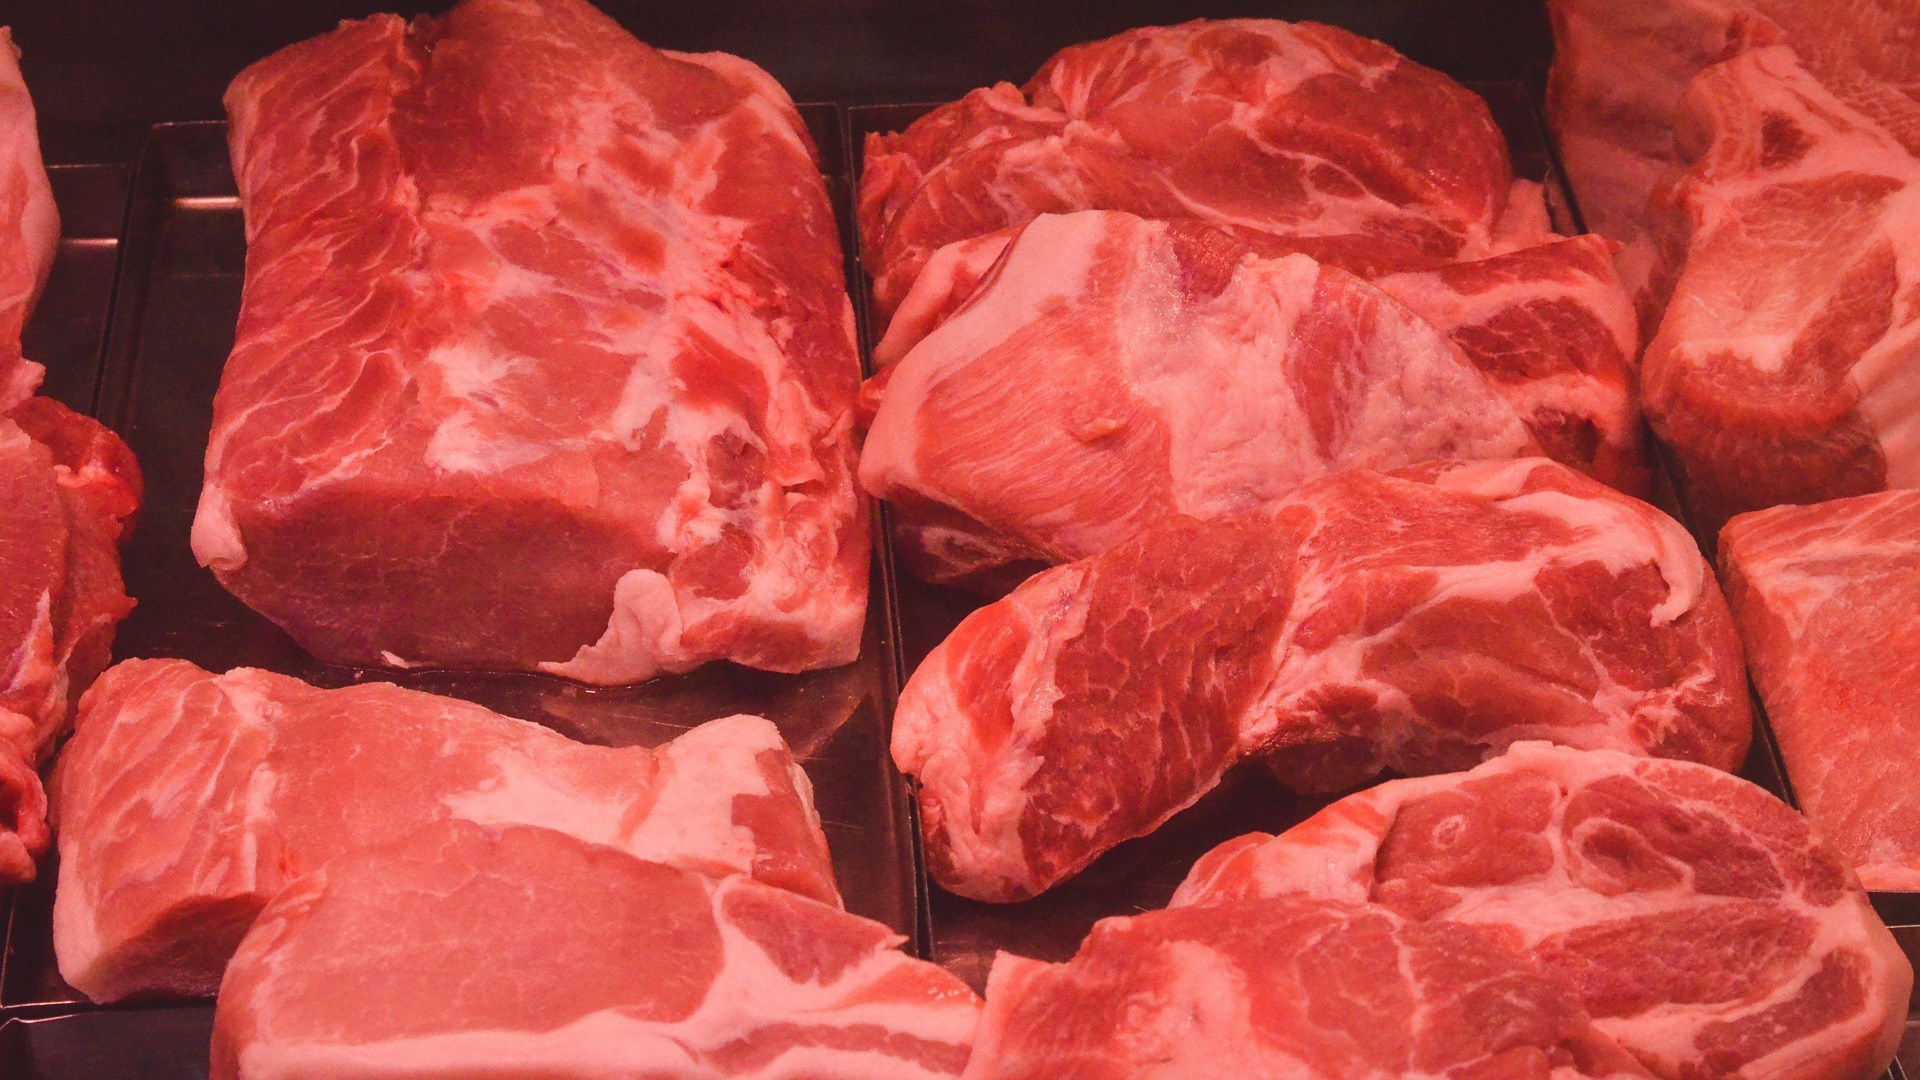 Предприниматель в Удмуртии устанавливал срок годности мяса, как ему вздумается